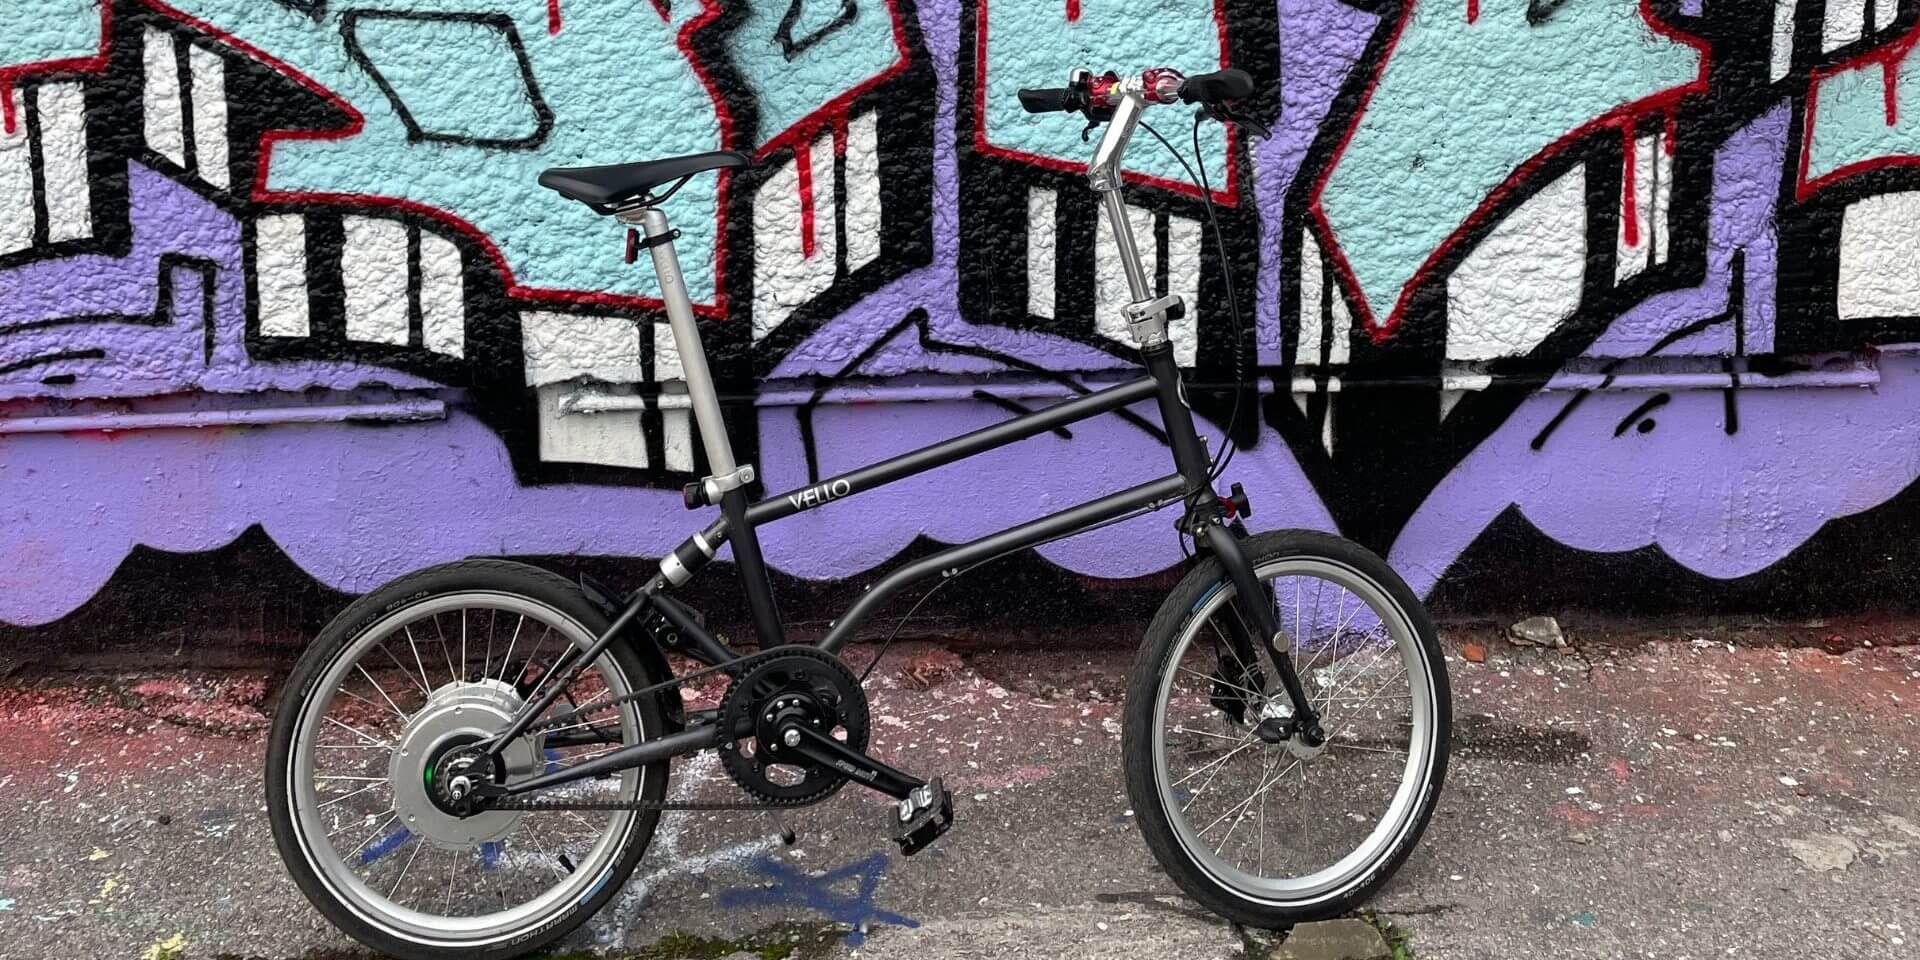 RADISH Kurztest: Vello Bike+ das ultraleichte E-Faltrad